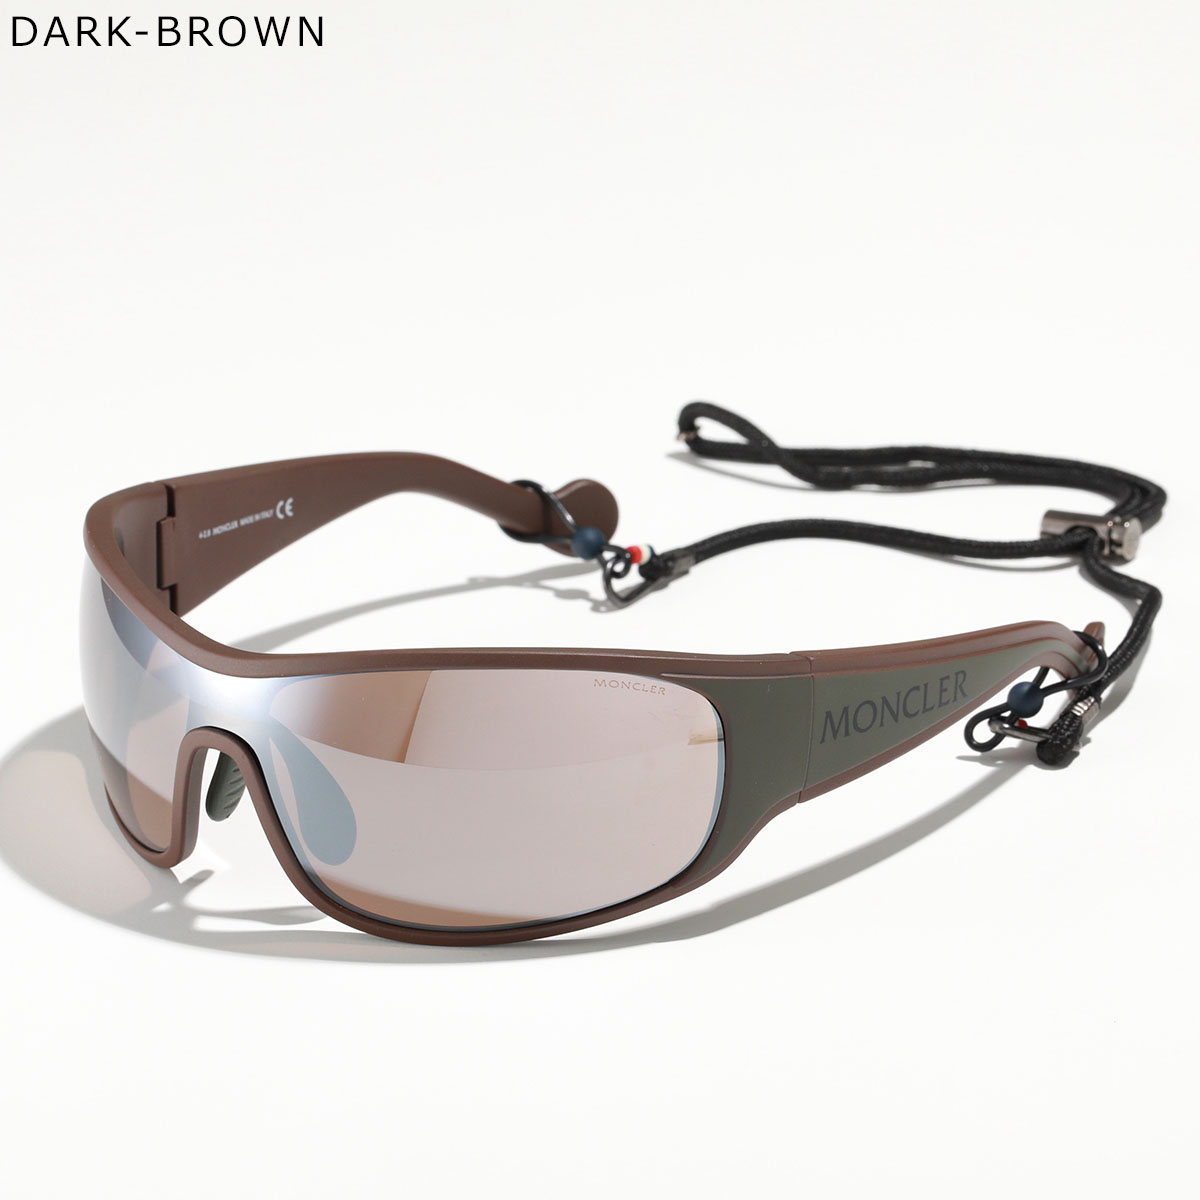 MONCLER モンクレール サングラス ML0129 メンズ メガネストラップ付き 偏光レンズ ロゴ 眼鏡 アイウェア スポーツ カラー4色